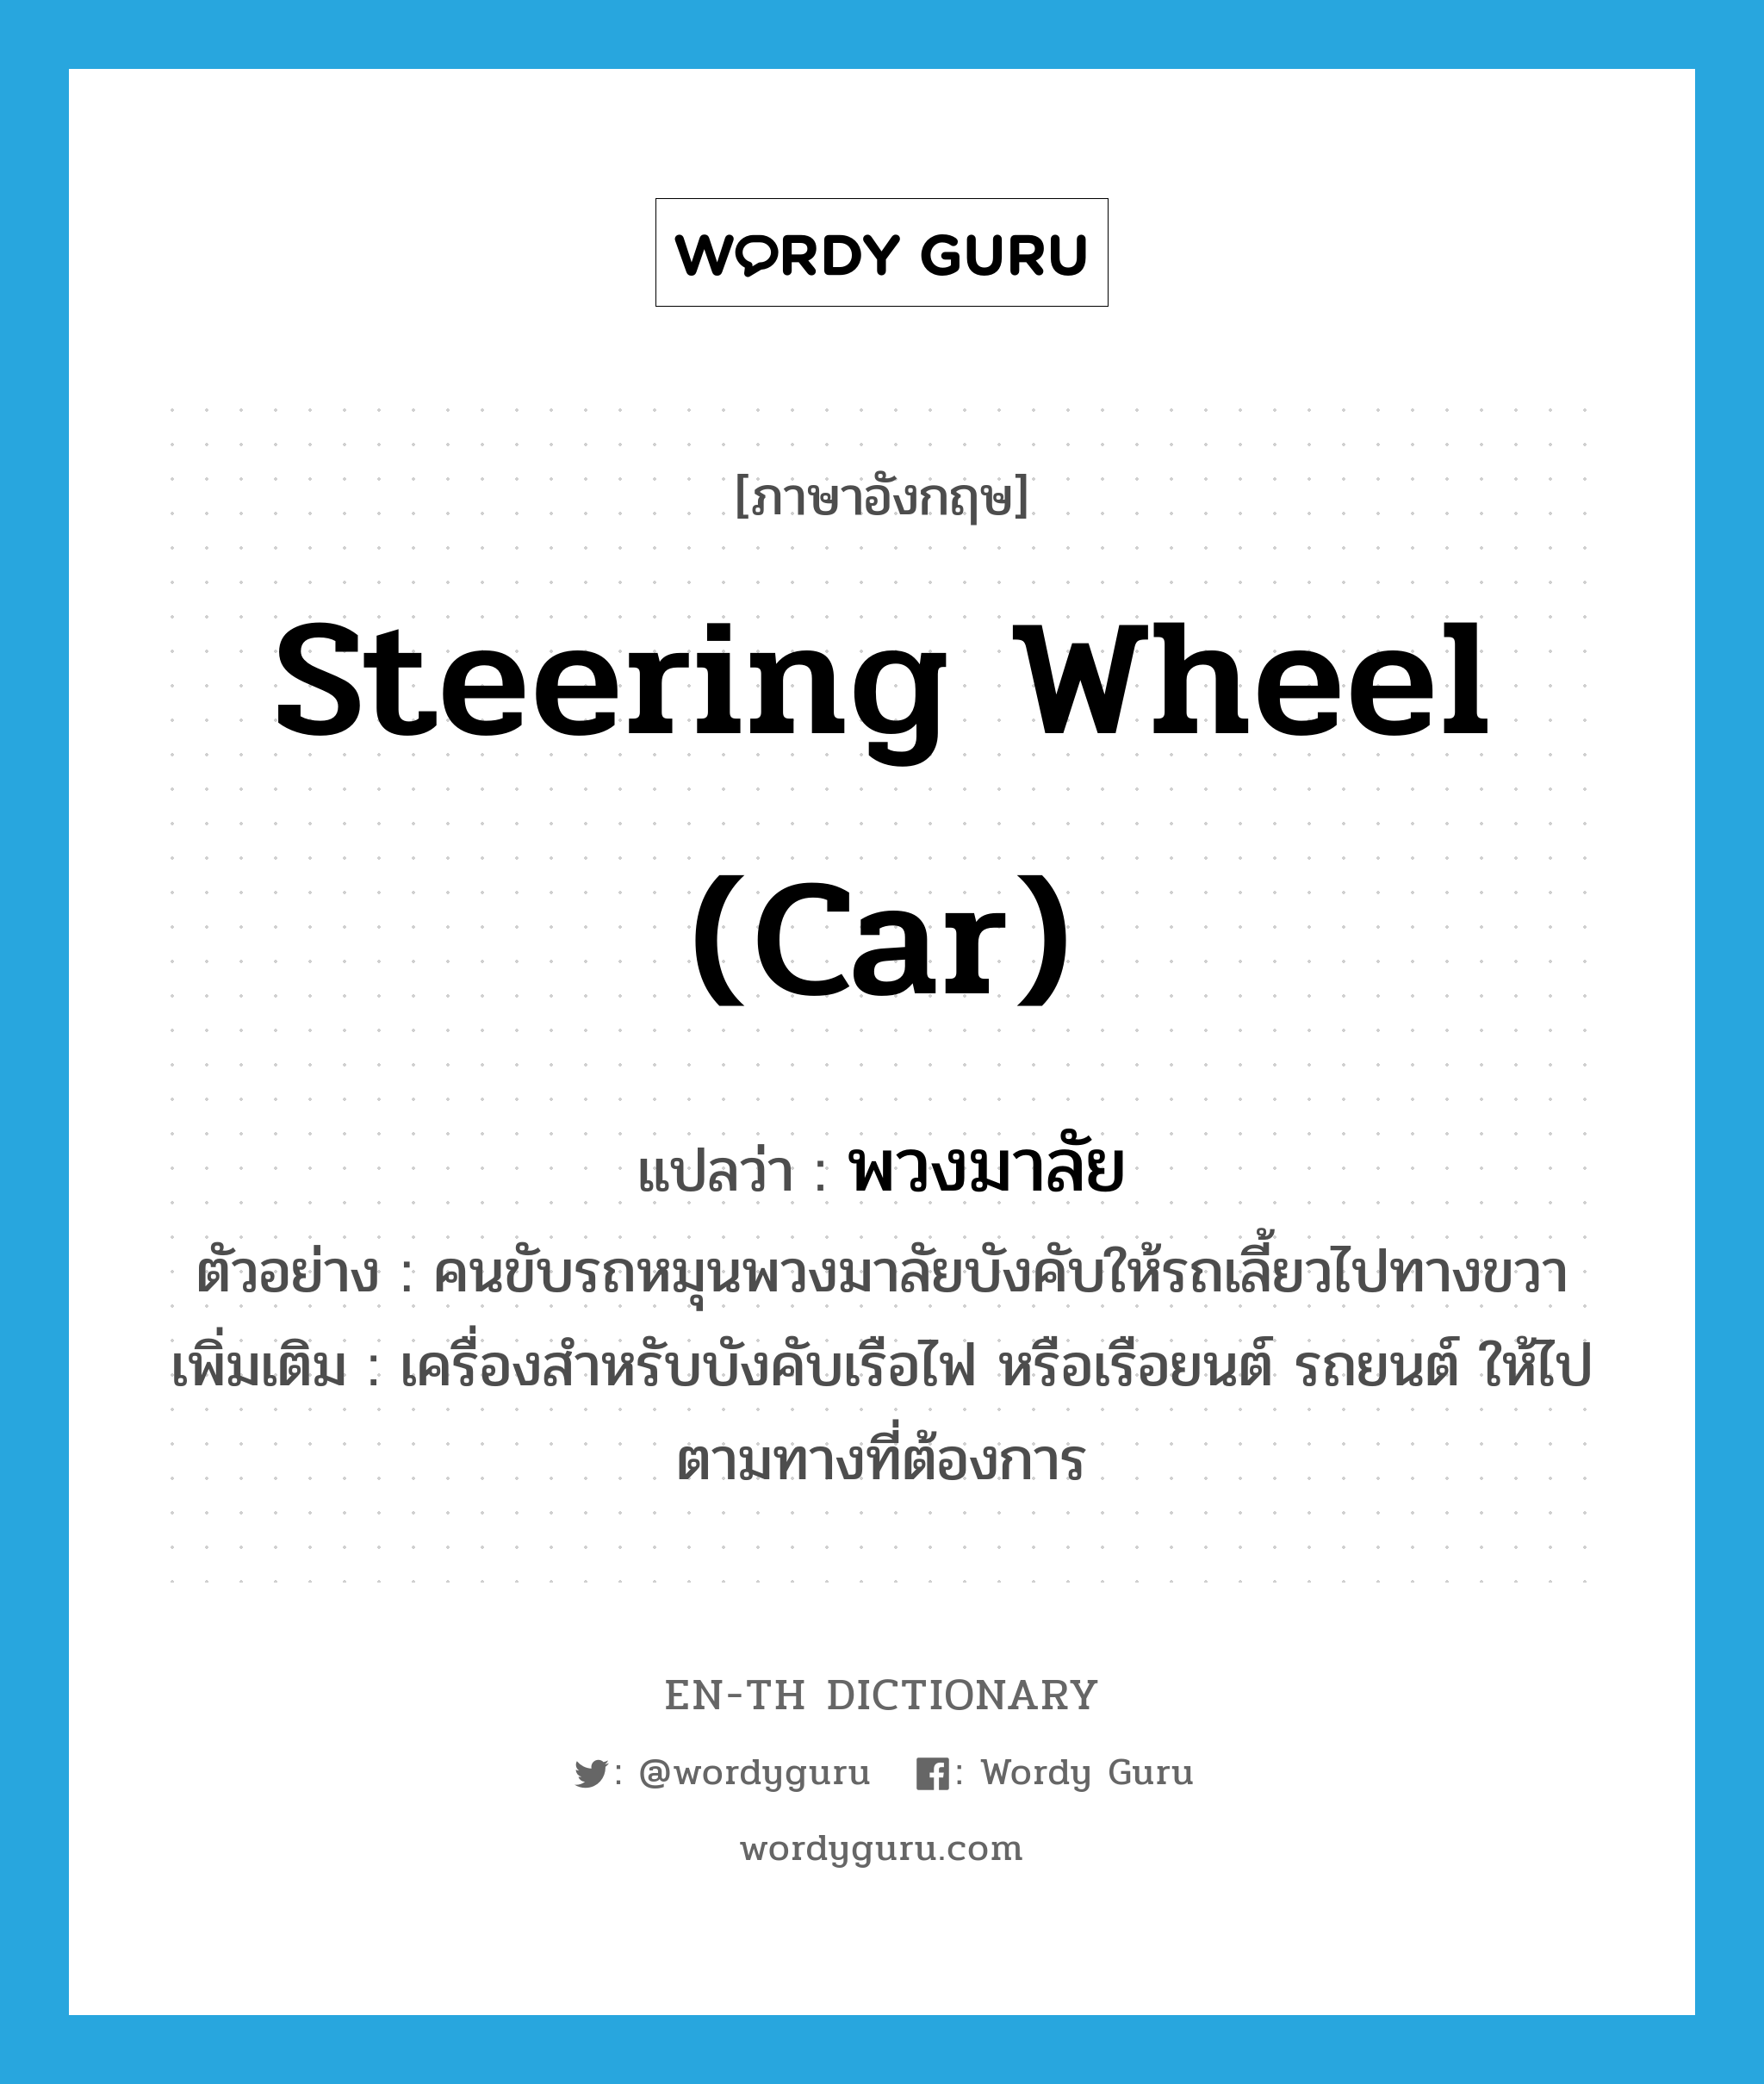 steering wheel (car) แปลว่า?, คำศัพท์ภาษาอังกฤษ steering wheel (car) แปลว่า พวงมาลัย ประเภท N ตัวอย่าง คนขับรถหมุนพวงมาลัยบังคับให้รถเลี้ยวไปทางขวา เพิ่มเติม เครื่องสำหรับบังคับเรือไฟ หรือเรือยนต์ รถยนต์ ให้ไปตามทางที่ต้องการ หมวด N